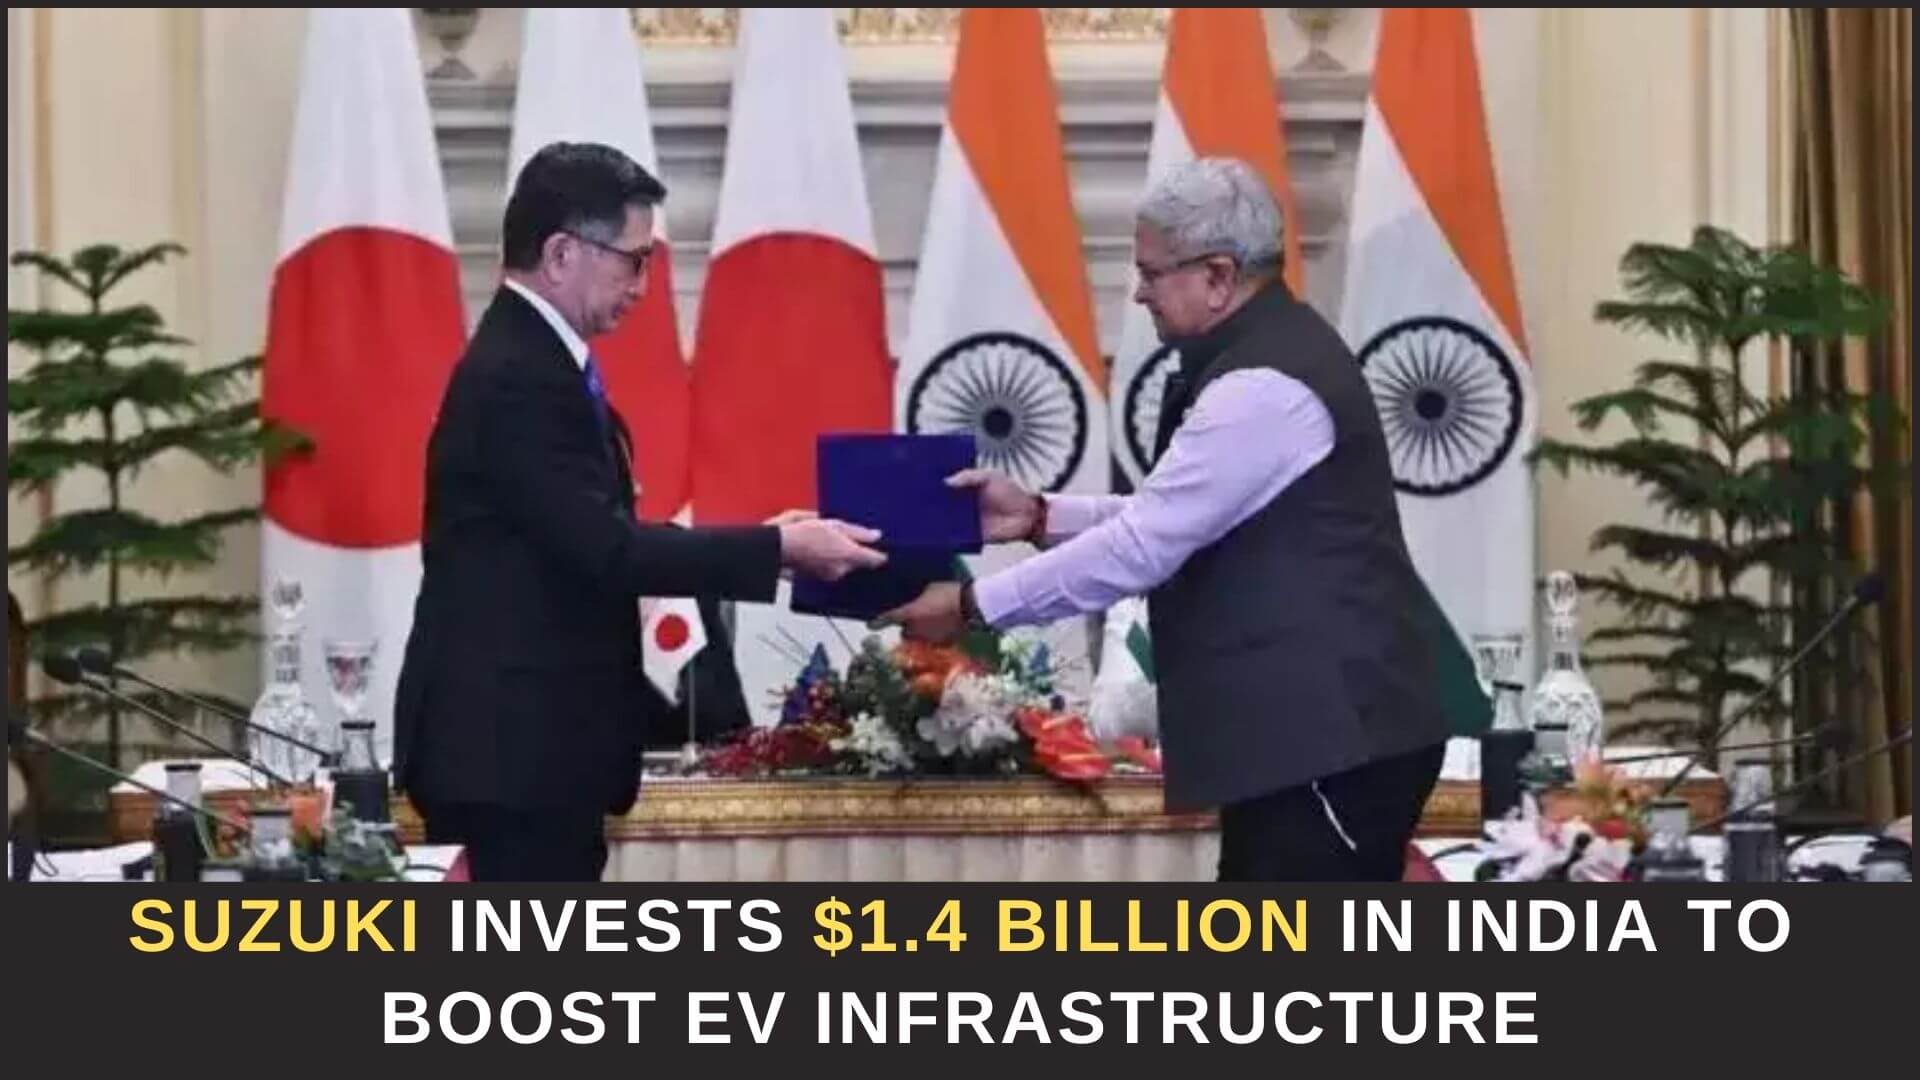 https://e-vehicleinfo.com/suzuki-invests-1-4-billion-in-india-to-boost-ev-infrastructure/